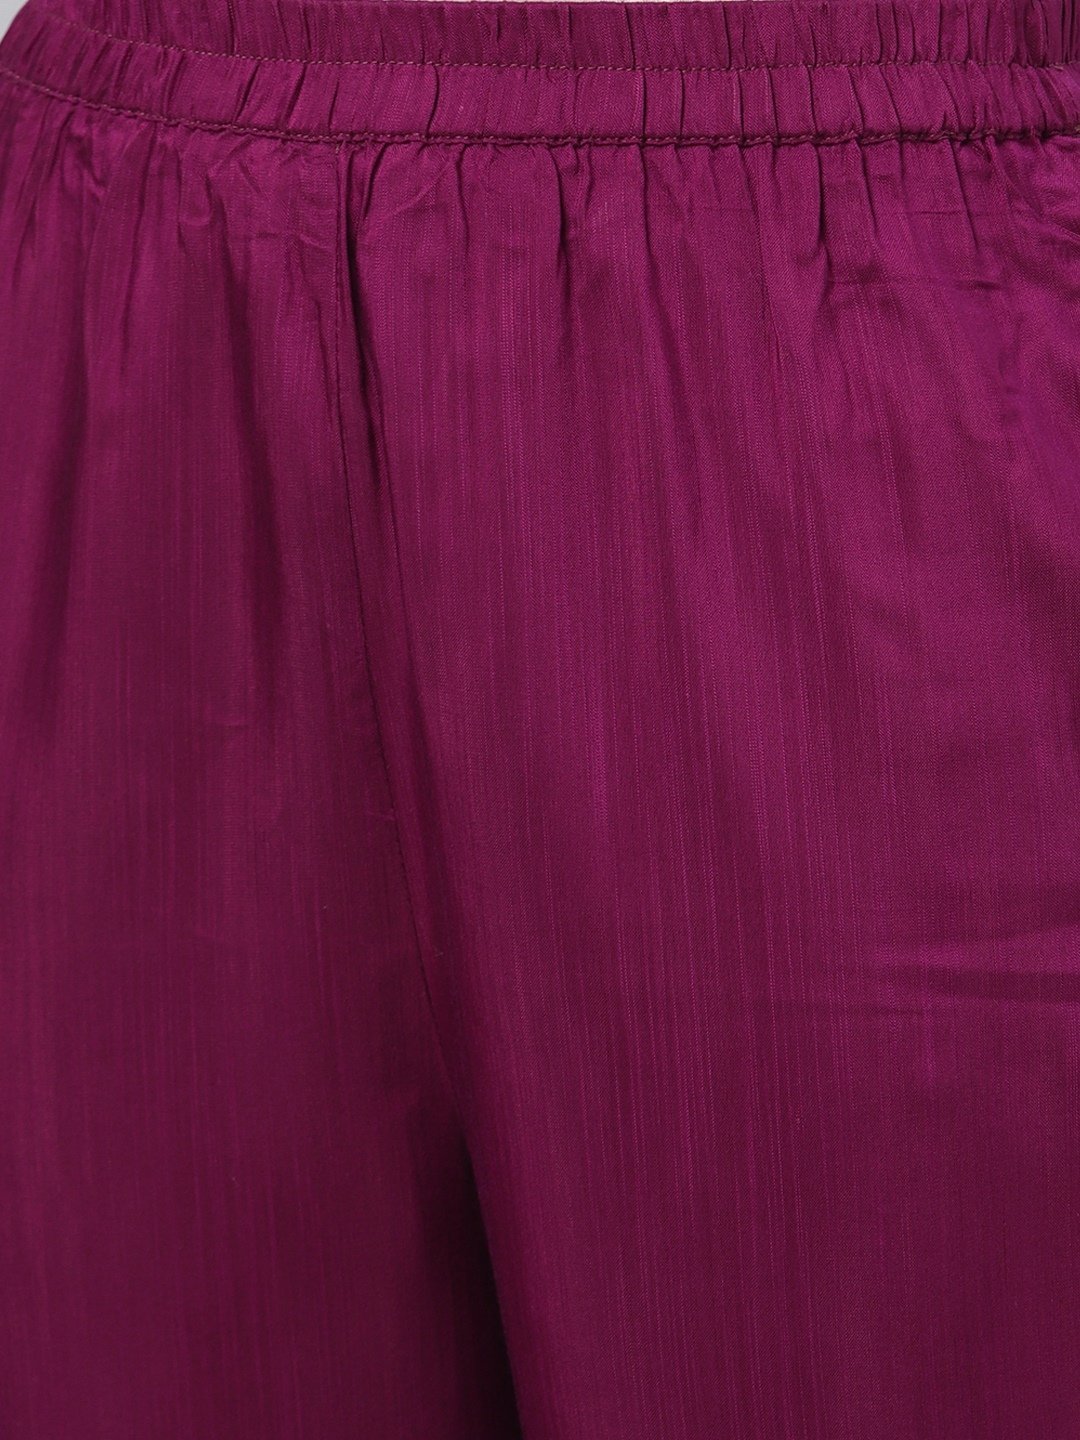 Women Purple Silk Kurta with Pant & Dupatta Set by Myshka (3 Pc Set)